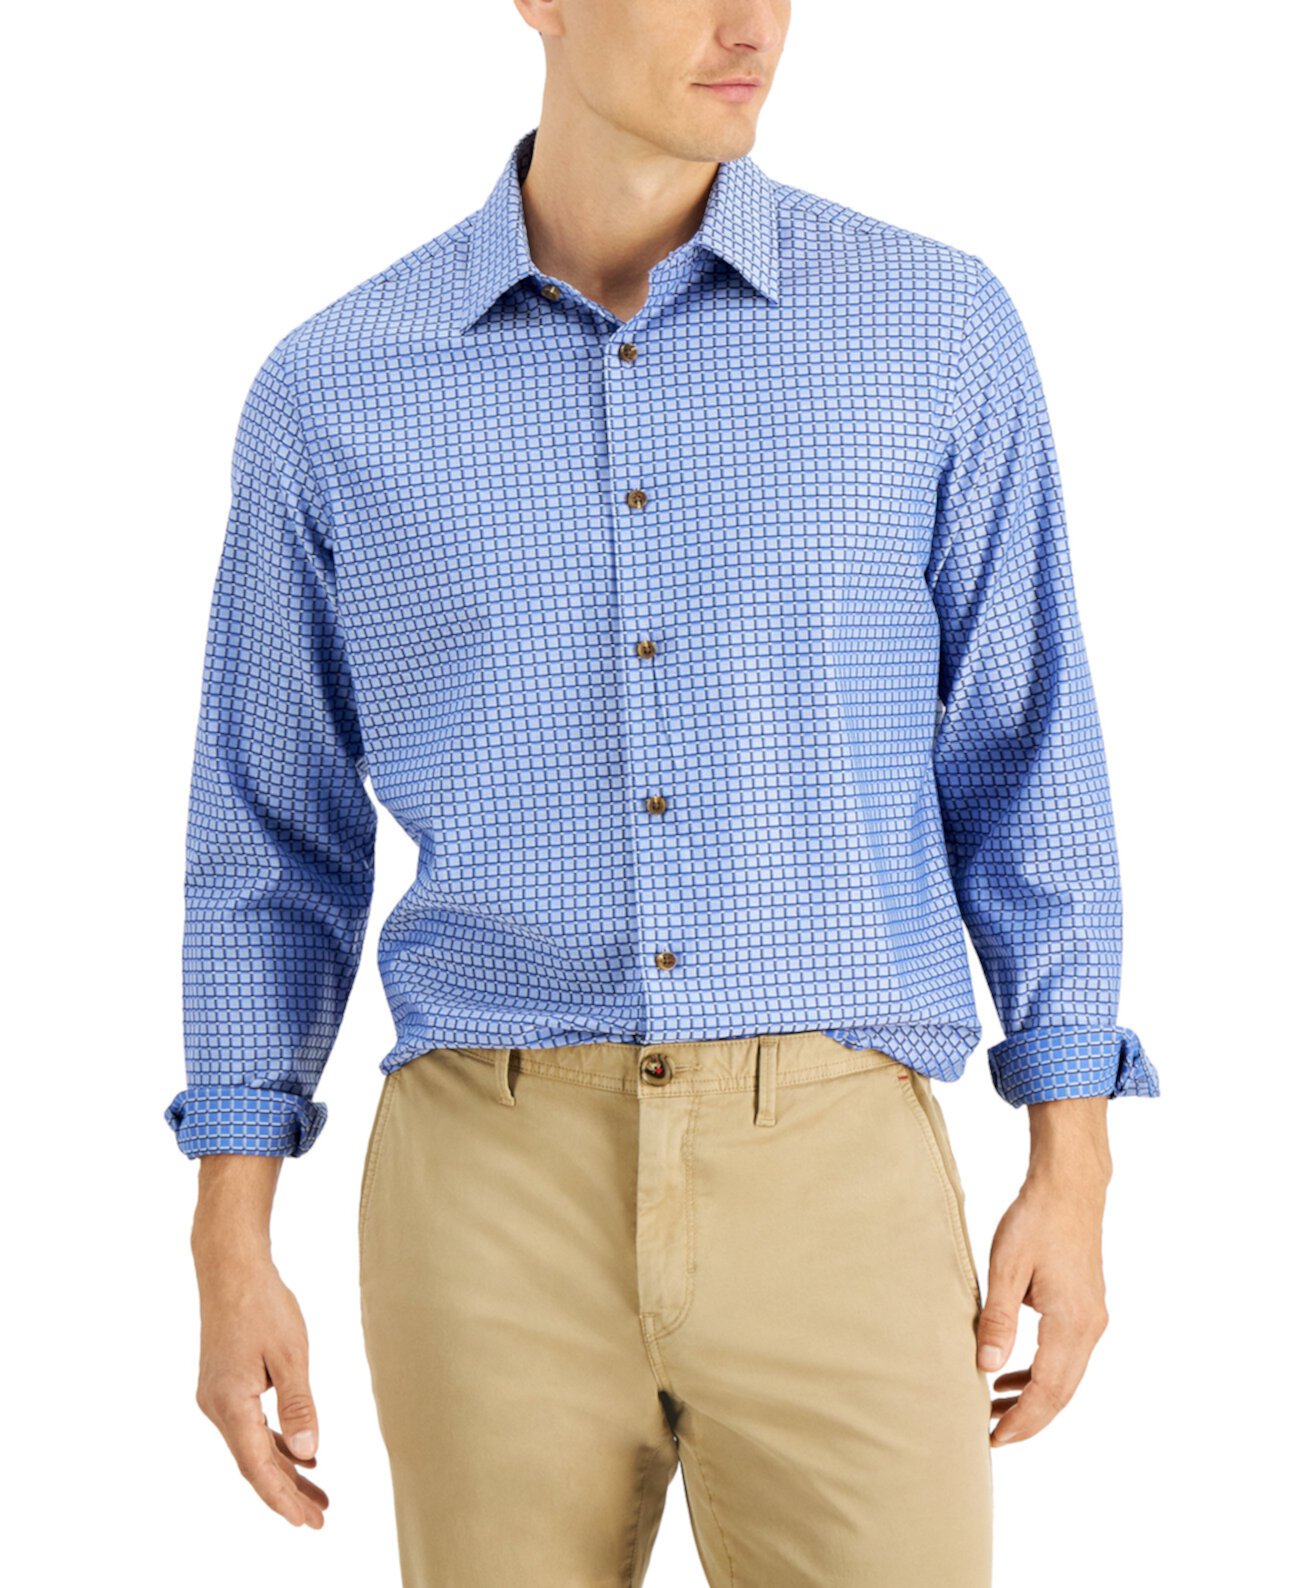 Мужская рубашка в клетку Debala, созданная для Macy's Club Room